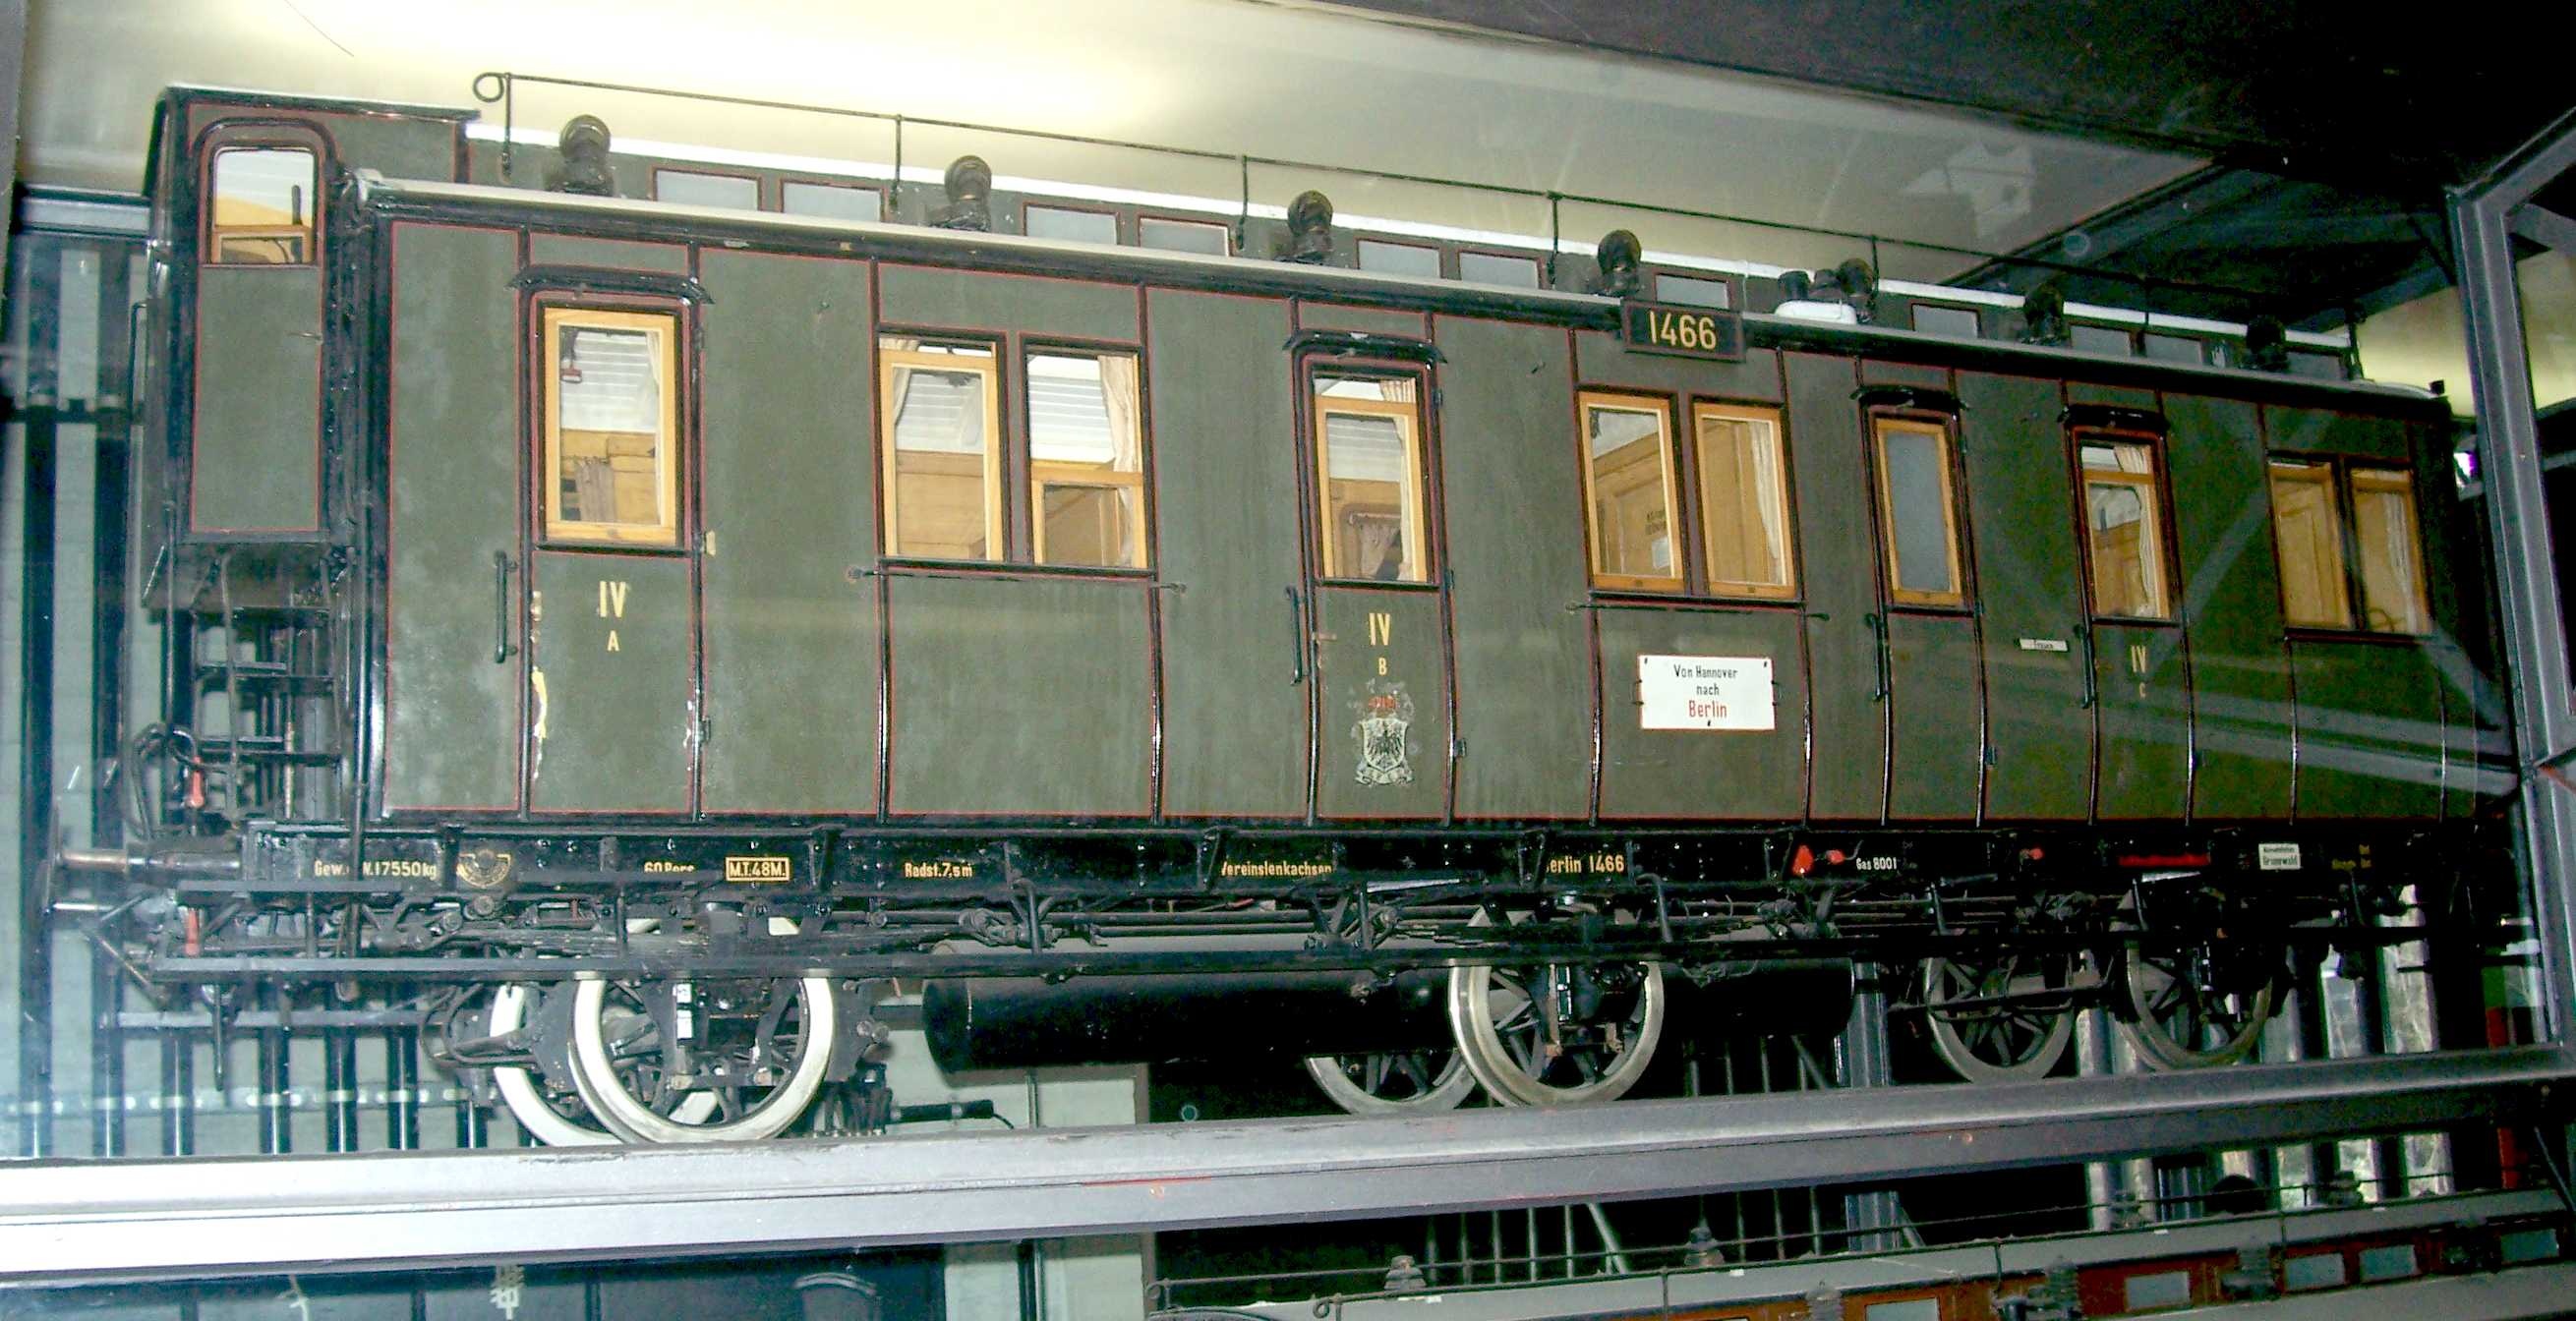 Dreiachsiger Abteilwagen 4. Klasse "Berlin 1466", nach Musterblatt M Ib11 1904, Modell 1:5 (Stiftung Deutsches Technikmuseum Berlin CC0)